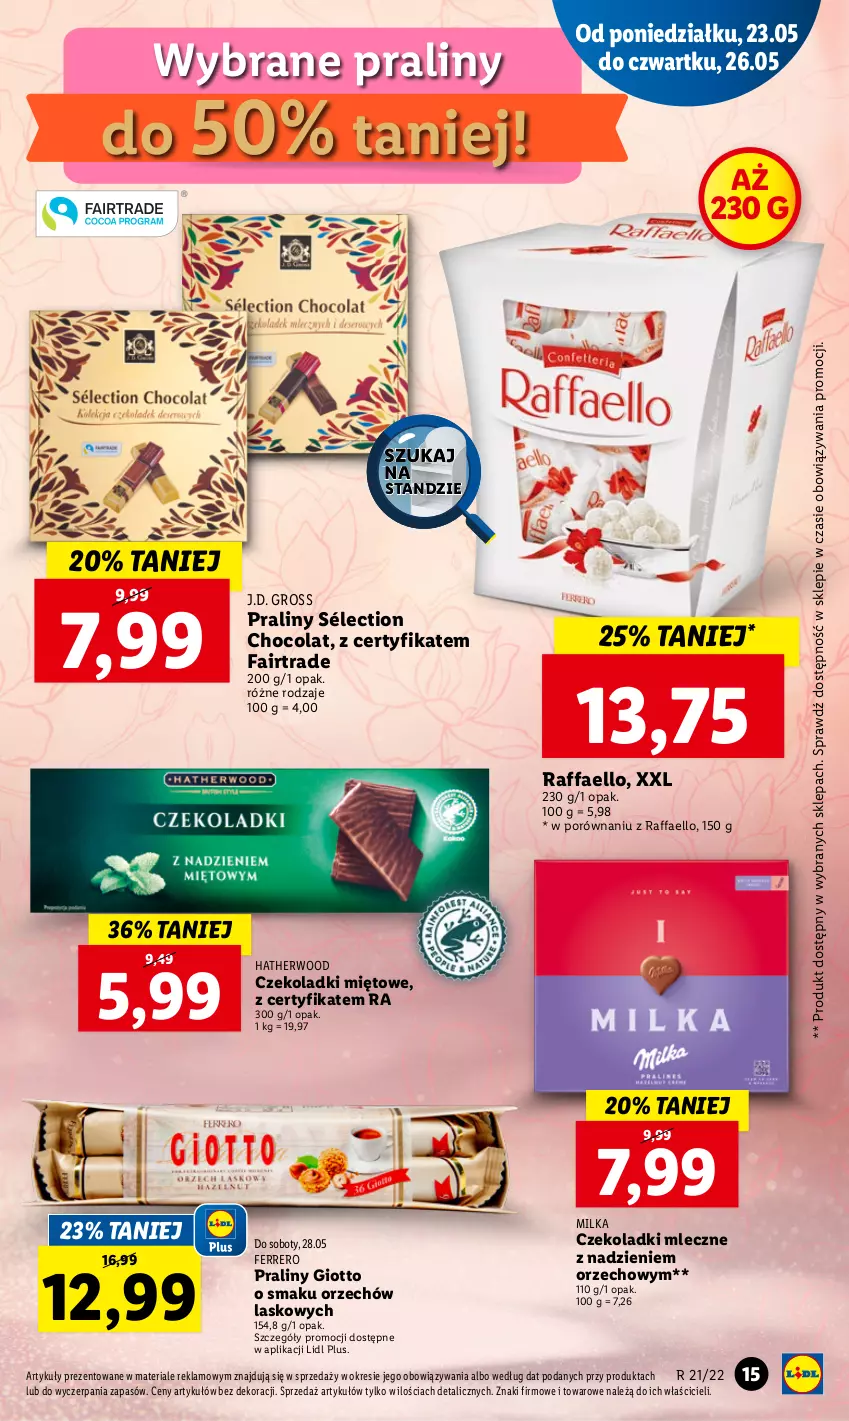 Gazetka promocyjna Lidl - GAZETKA - ważna 23.05 do 25.05.2022 - strona 15 - produkty: Fa, Ferrero, Milka, Por, Praliny, Raffaello